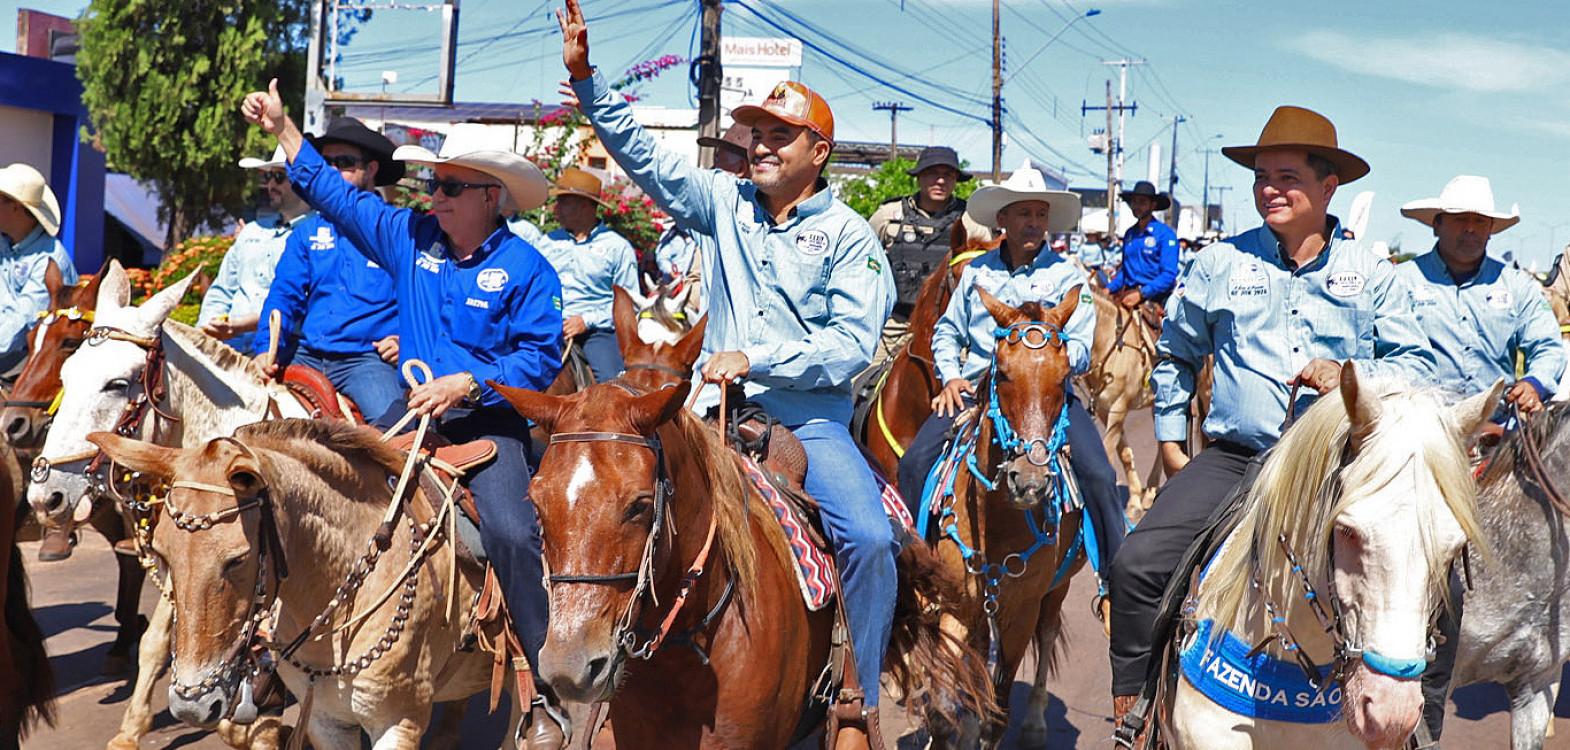 O governador Wanderlei Barbosa percorreu o trajeto ao lado de milhares de cavaleiros e amazonas, destacando a importância do evento dentro da programação da 56ª Expoara